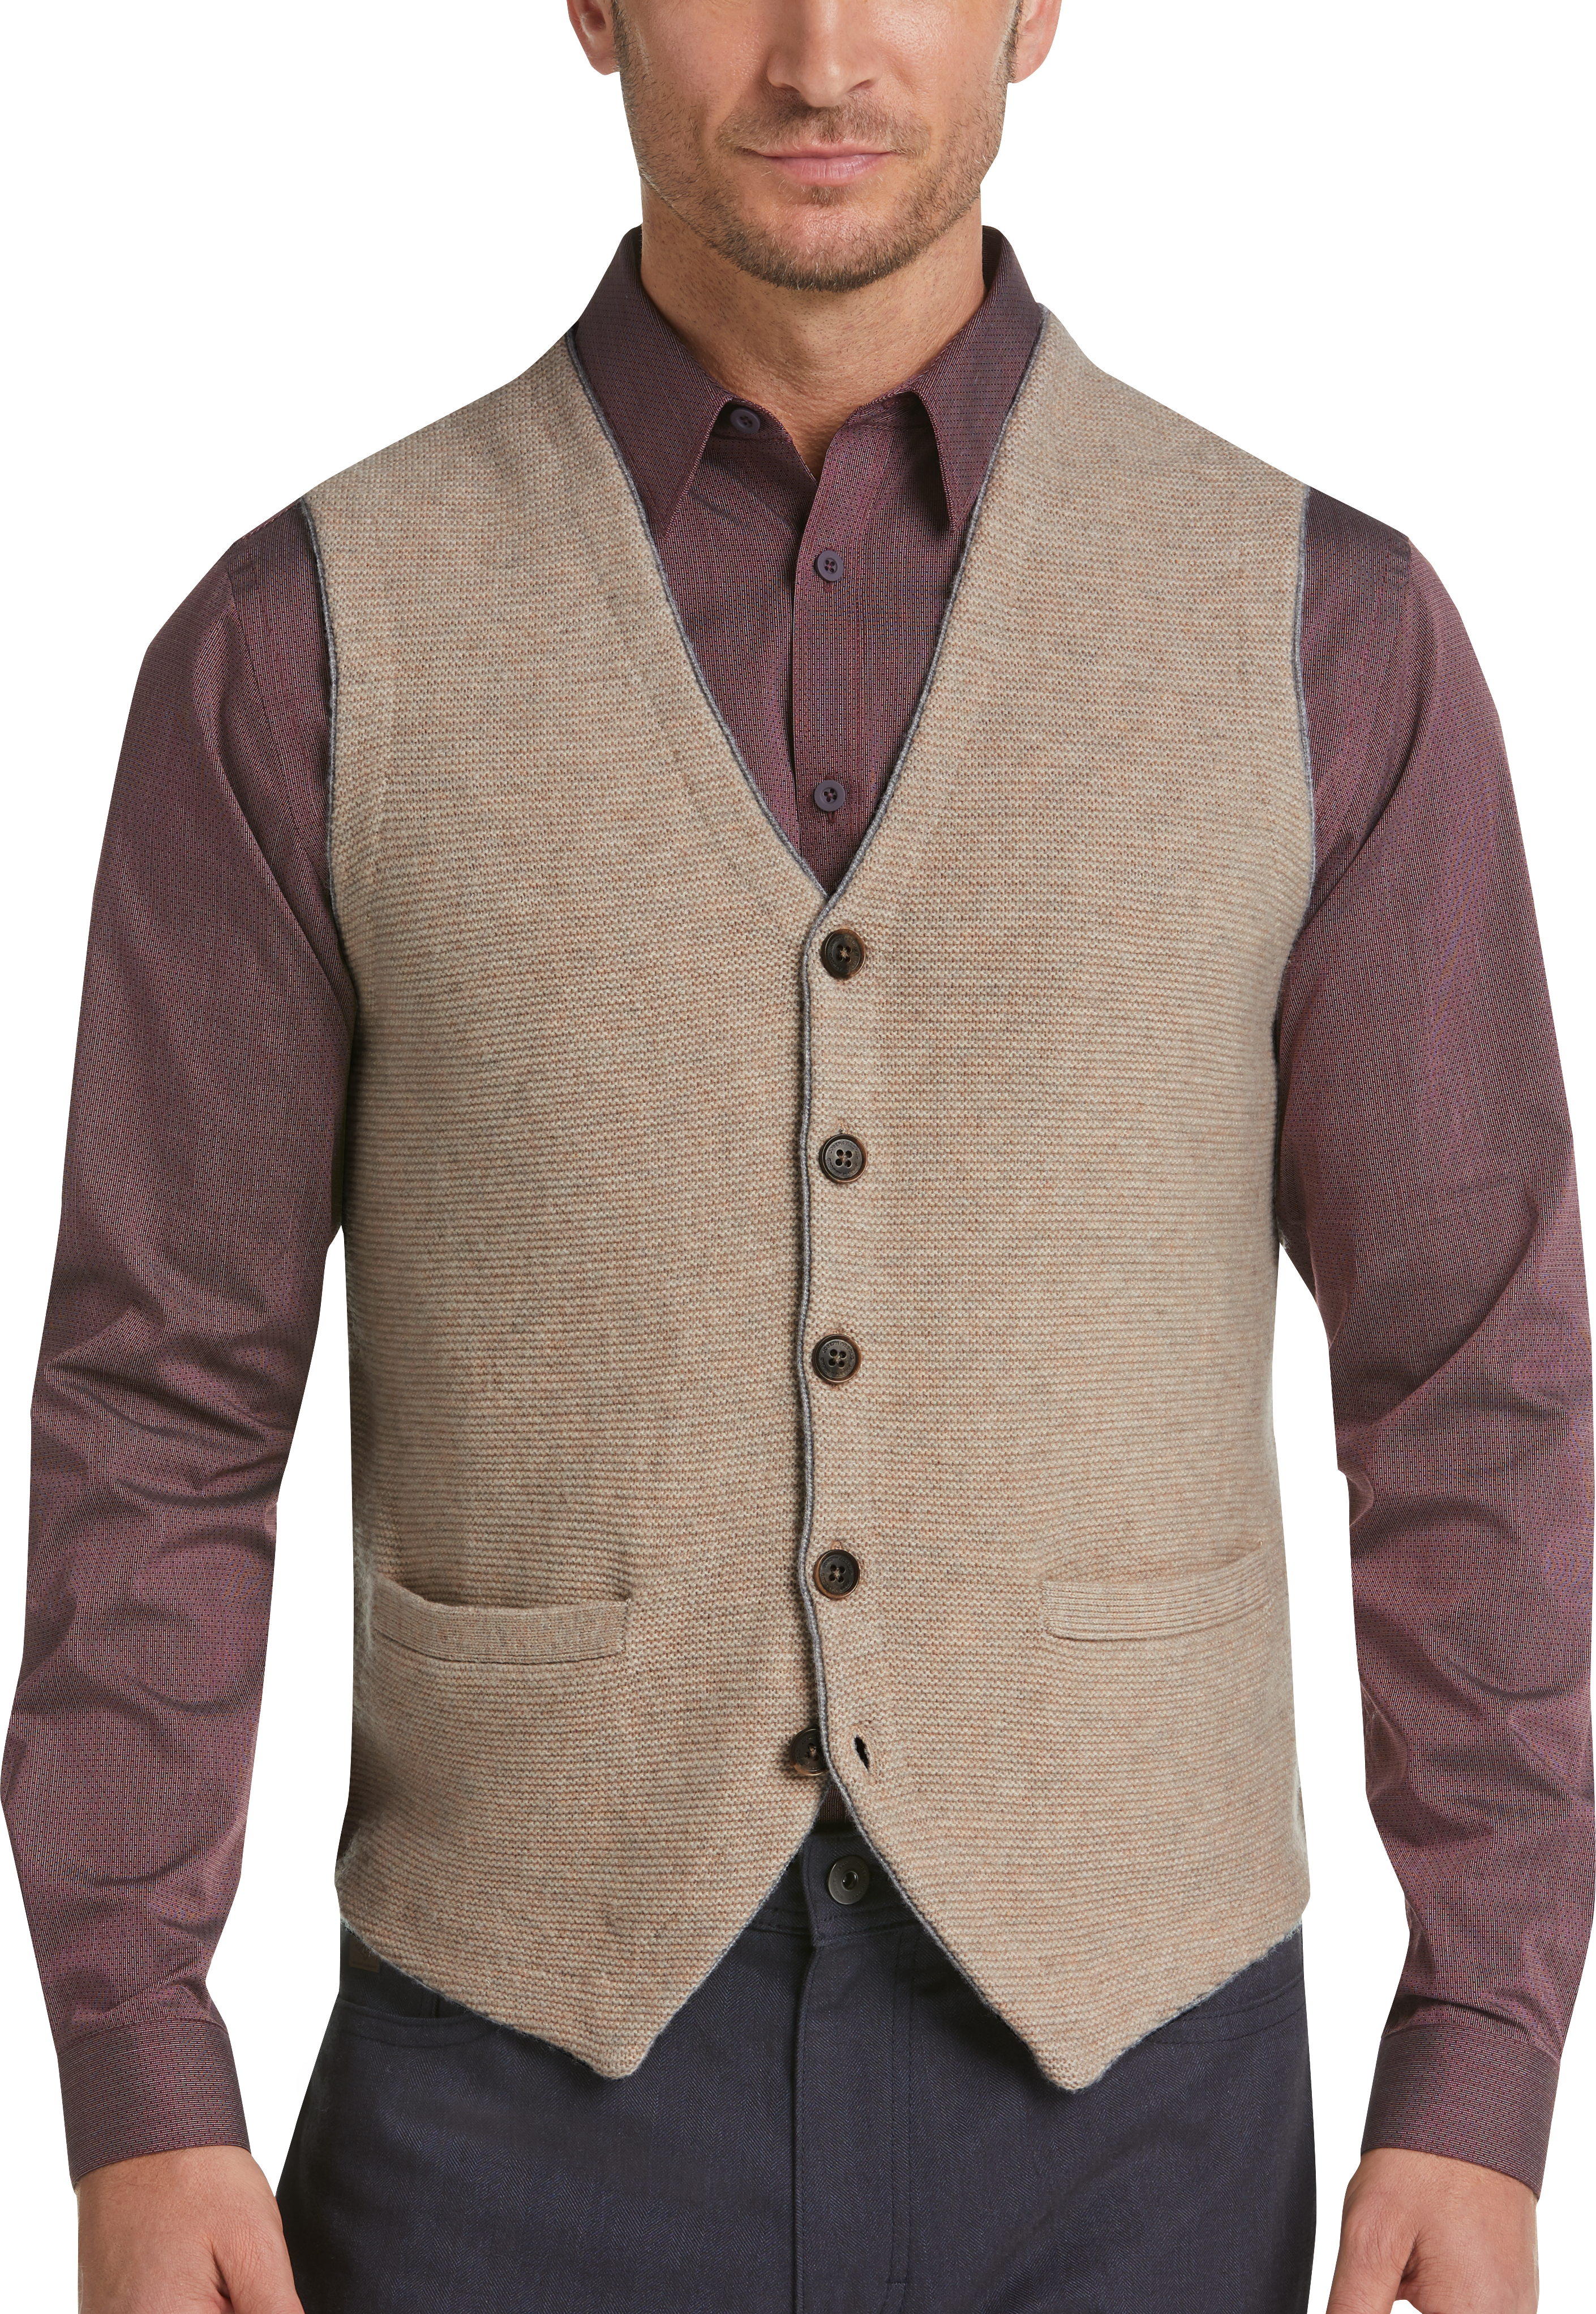 Joseph Abboud Wheat Tan Sweater Vest - Men's Sale | Men's Wearhouse